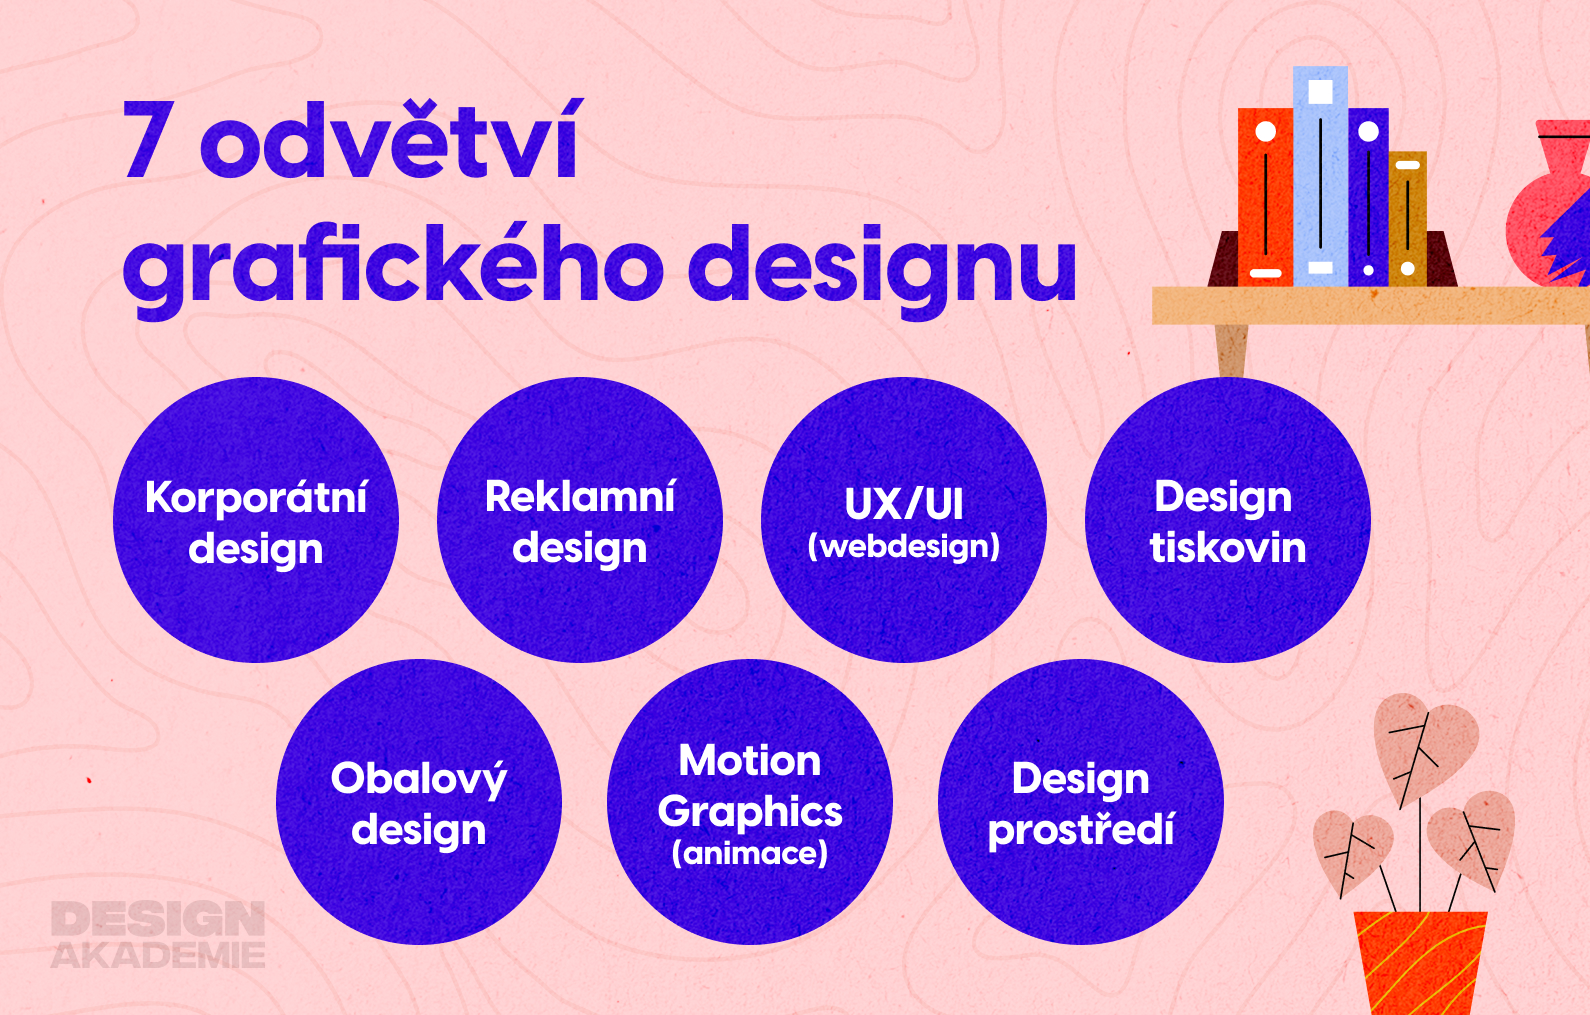 7 odvětví grafického designu